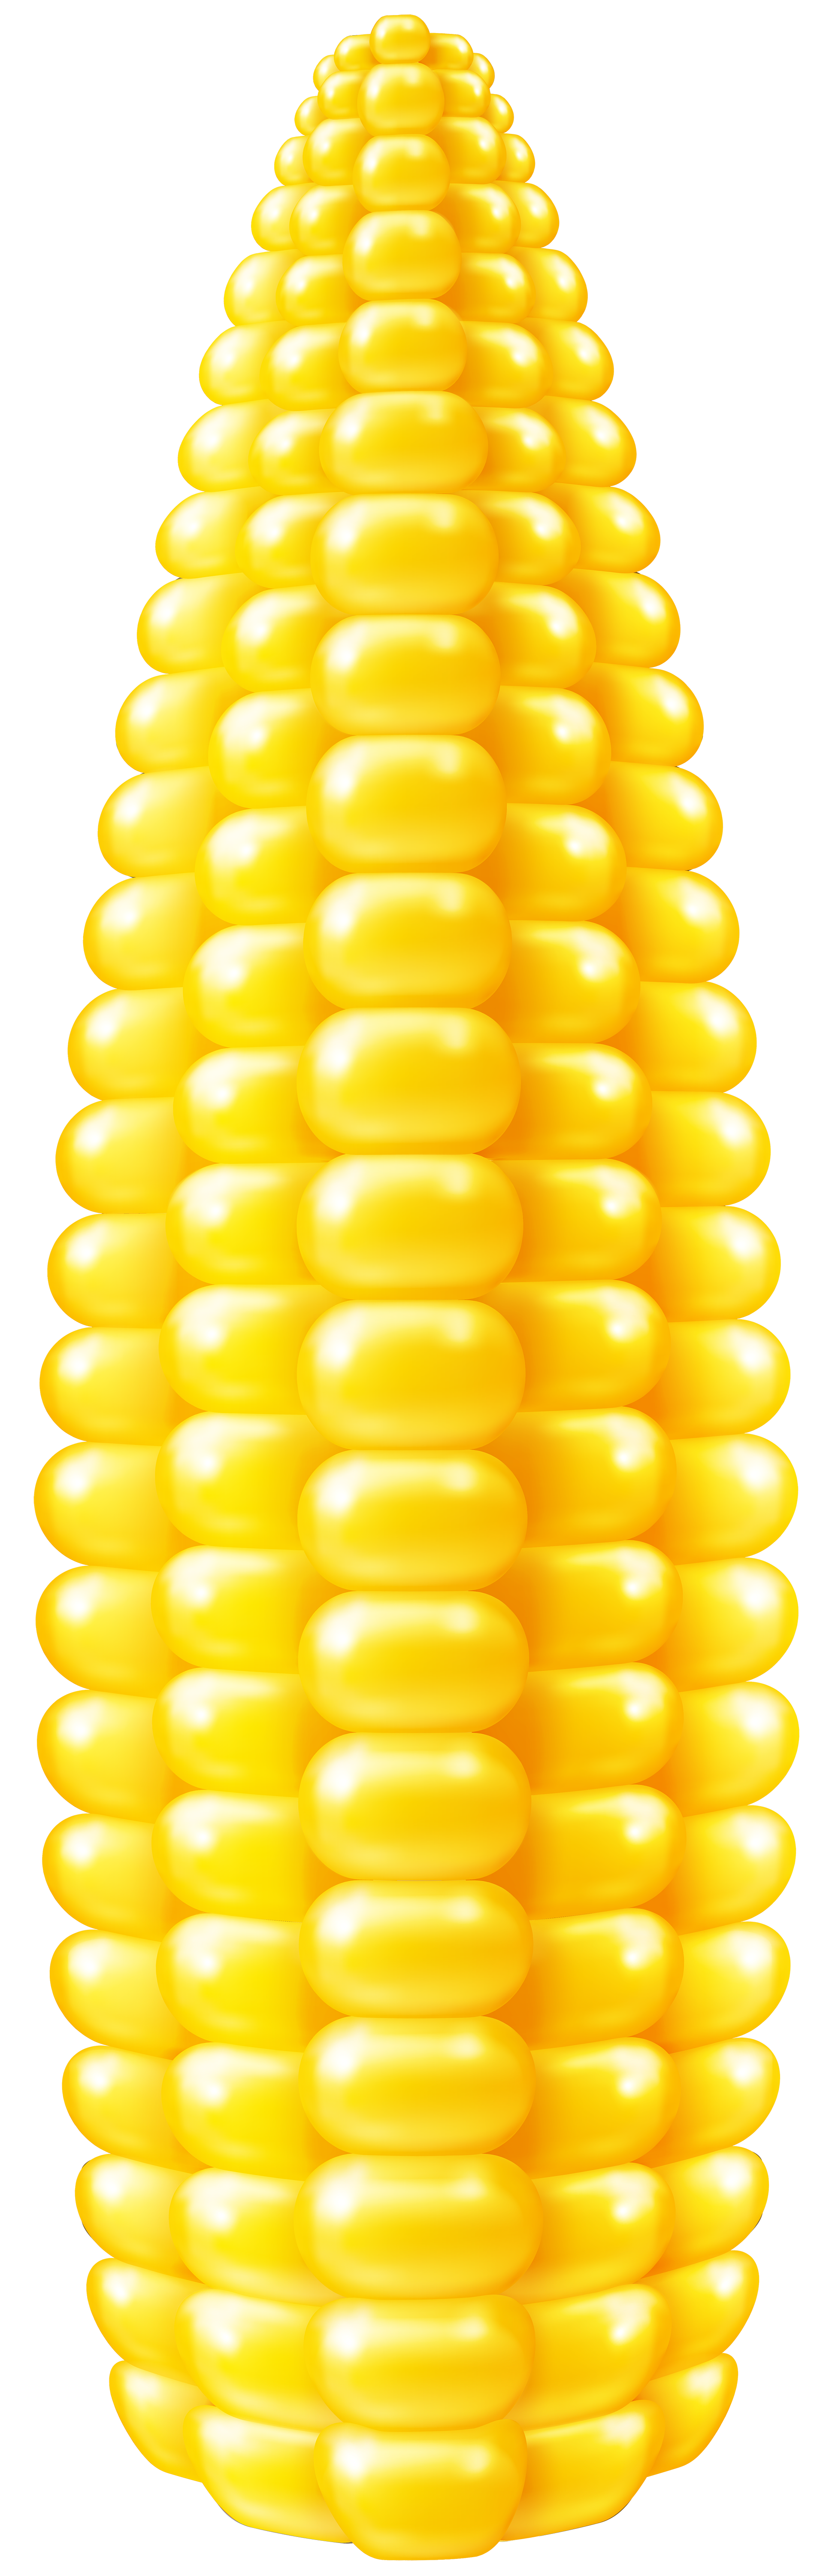 Corn corn kernel